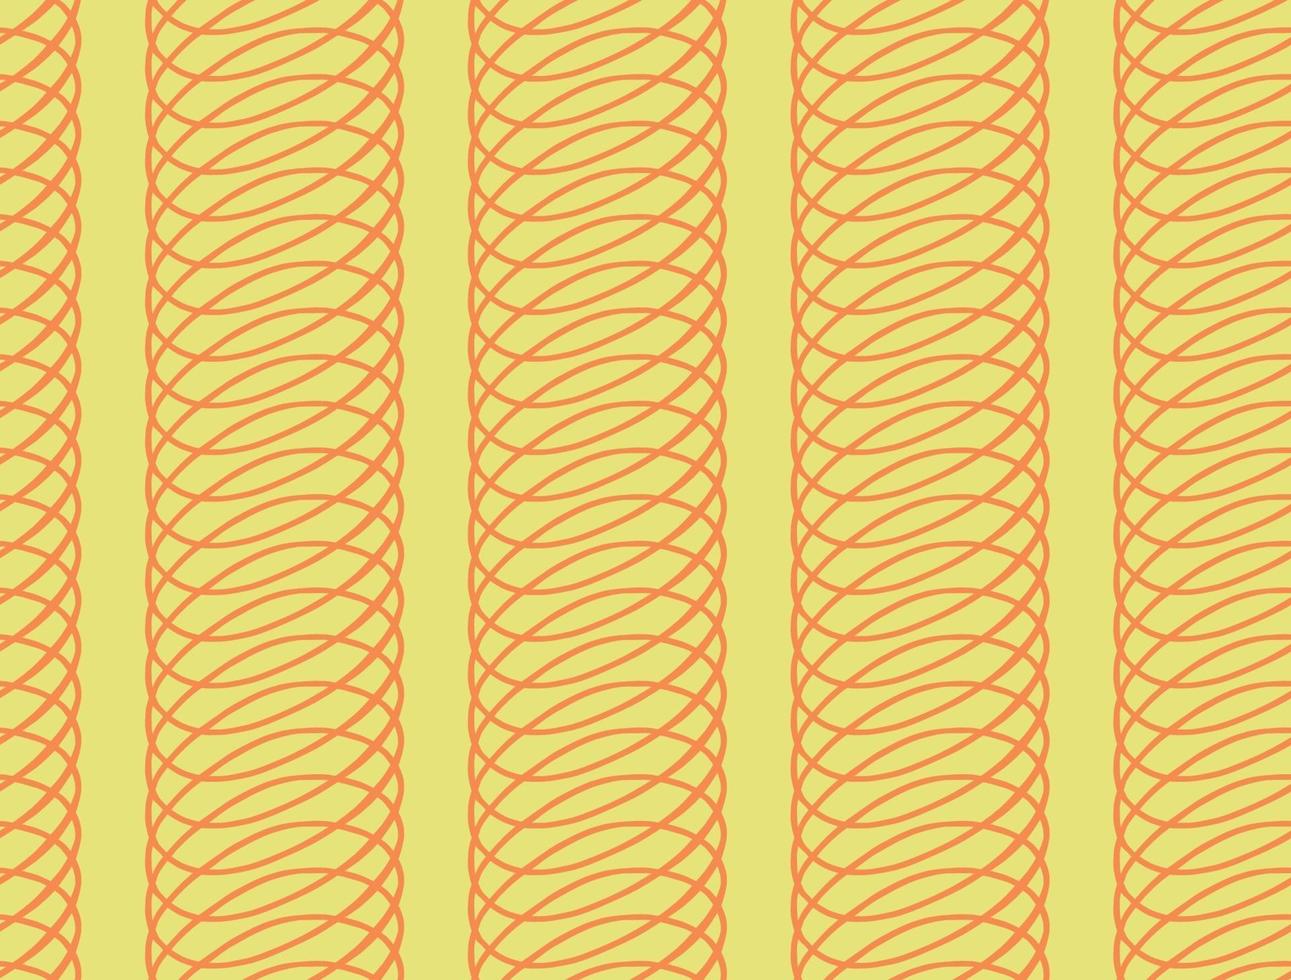 fundo da textura do vetor, padrão sem emenda. mão desenhada, cores amarelas e laranja. vetor